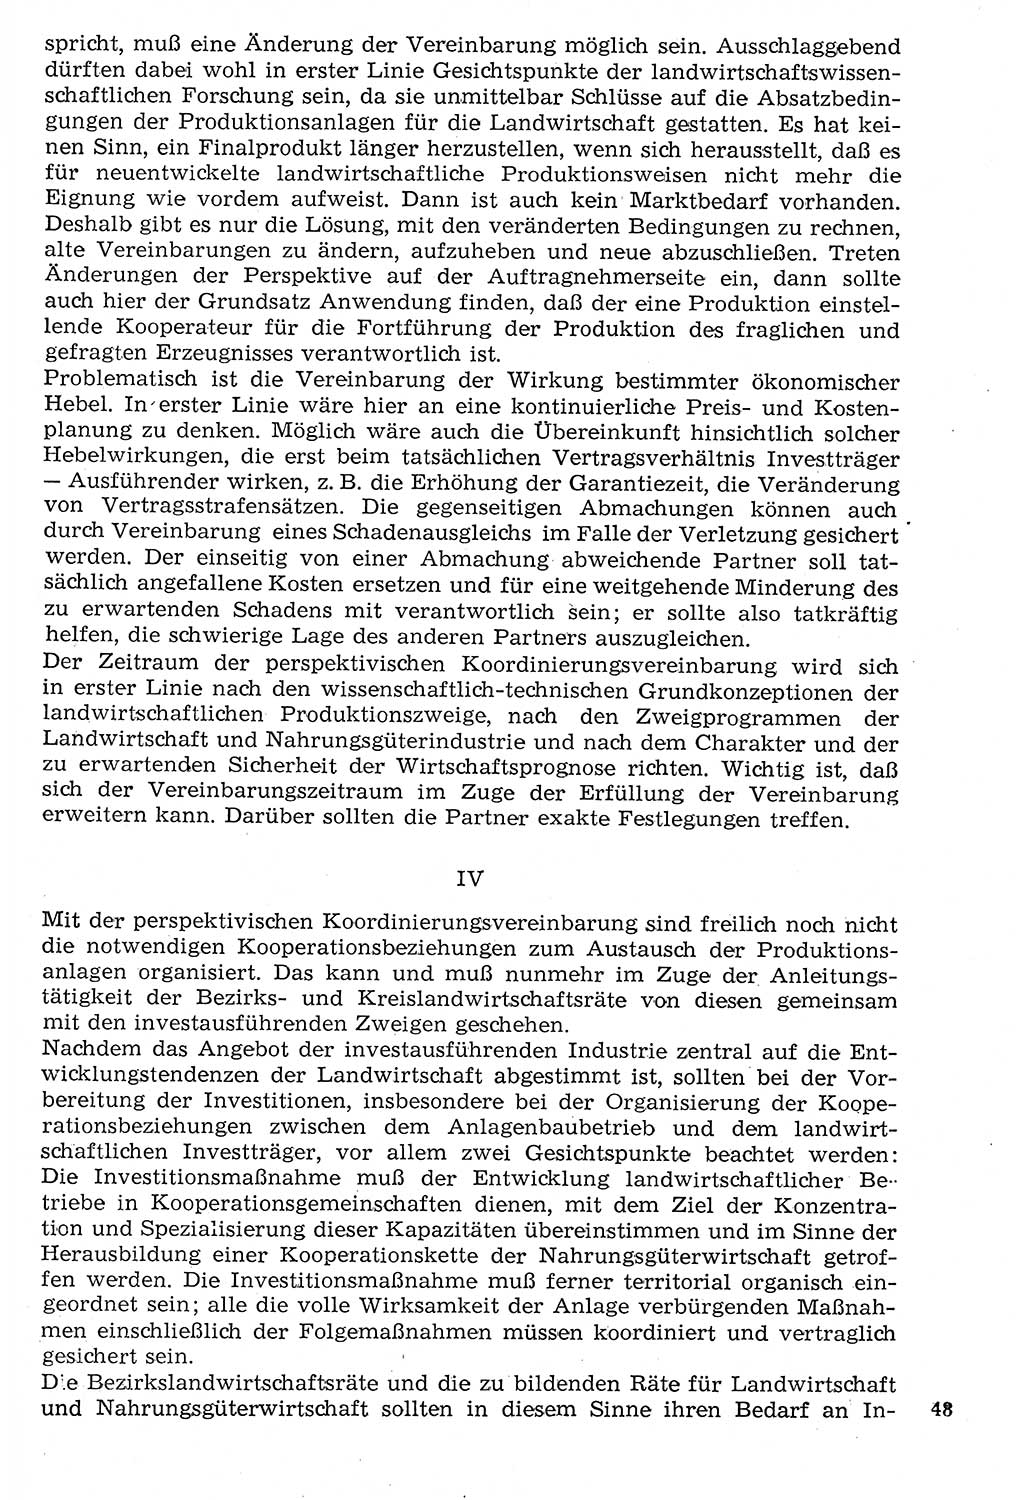 Staat und Recht (StuR), 17. Jahrgang [Deutsche Demokratische Republik (DDR)] 1968, Seite 48 (StuR DDR 1968, S. 48)